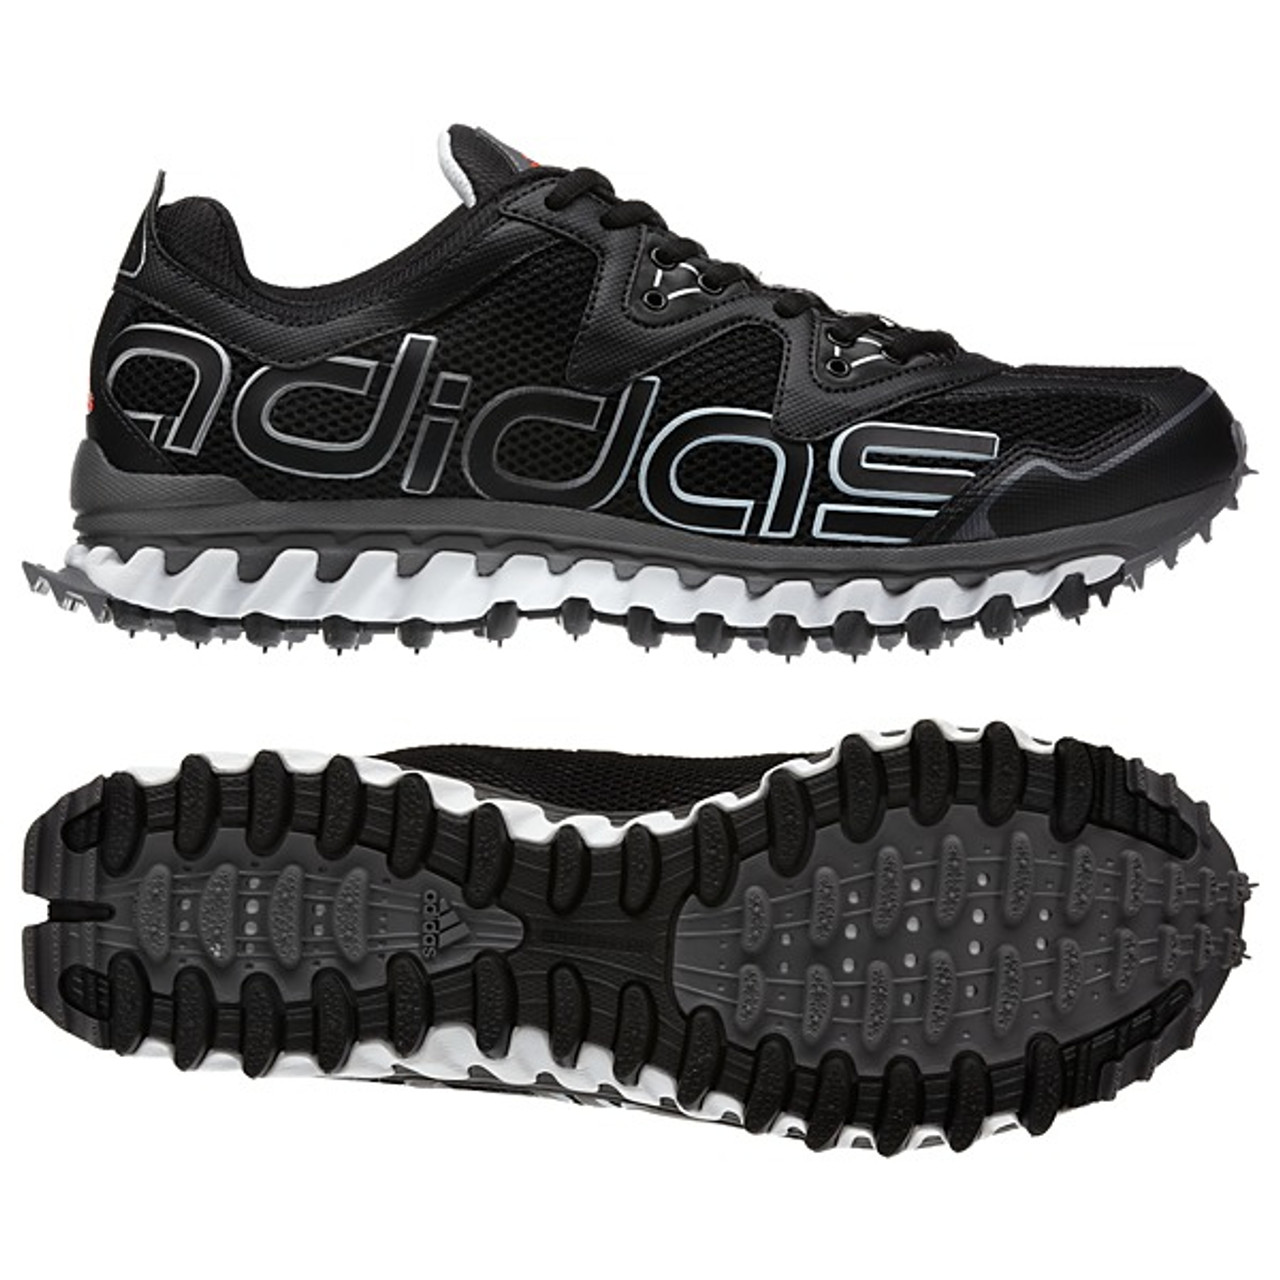 Adidas Vigor 2 Black/White | Discount Adidas Men's Athletic Shoes & More - Shoolu.com | Shoolu.com